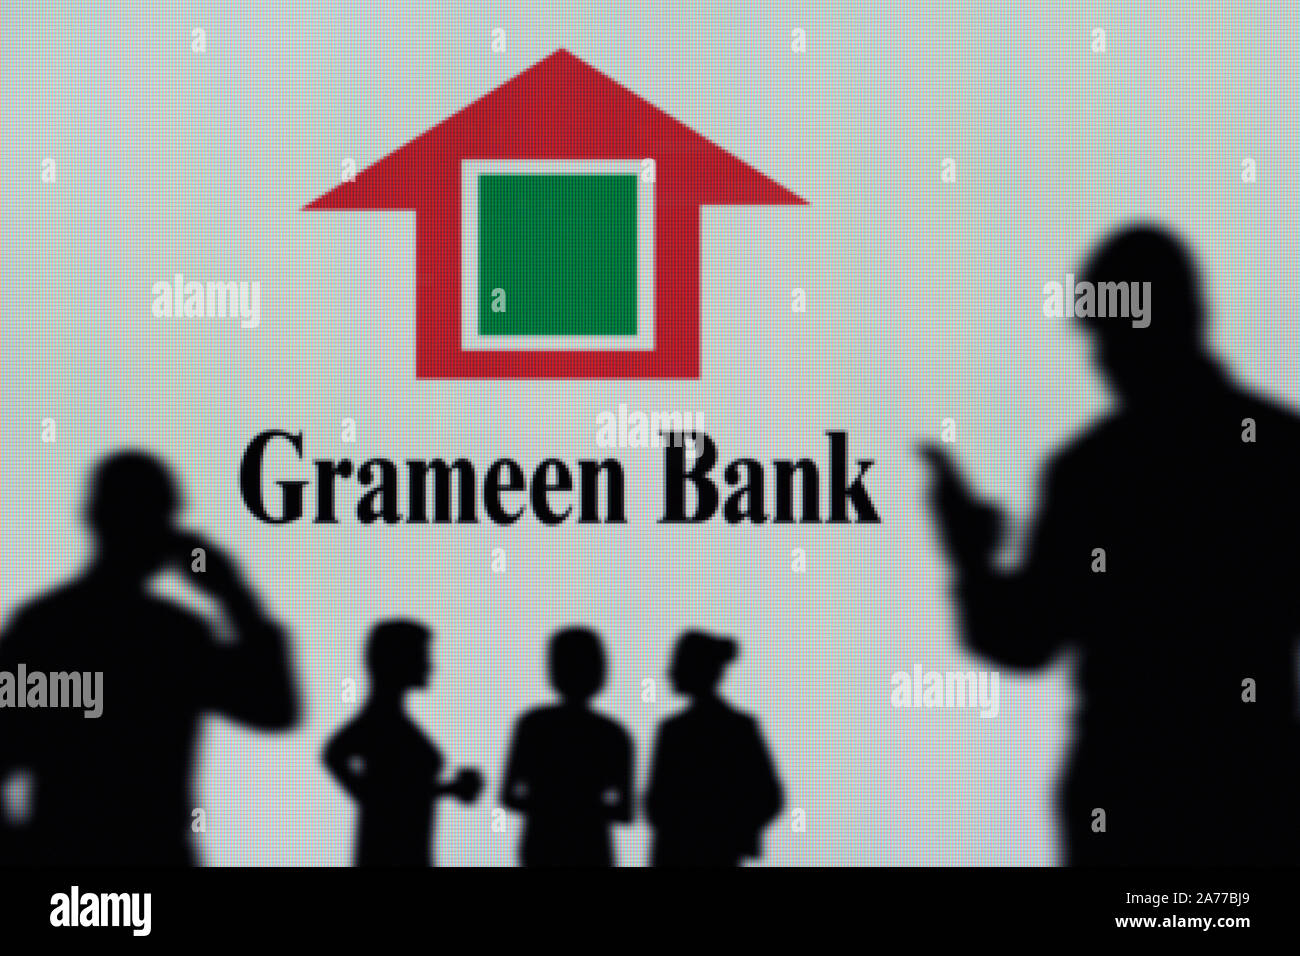 La Grameen Bank logo è visibile su uno schermo a LED in background mentre si profila una persona utilizza uno smartphone (solo uso editoriale) Foto Stock